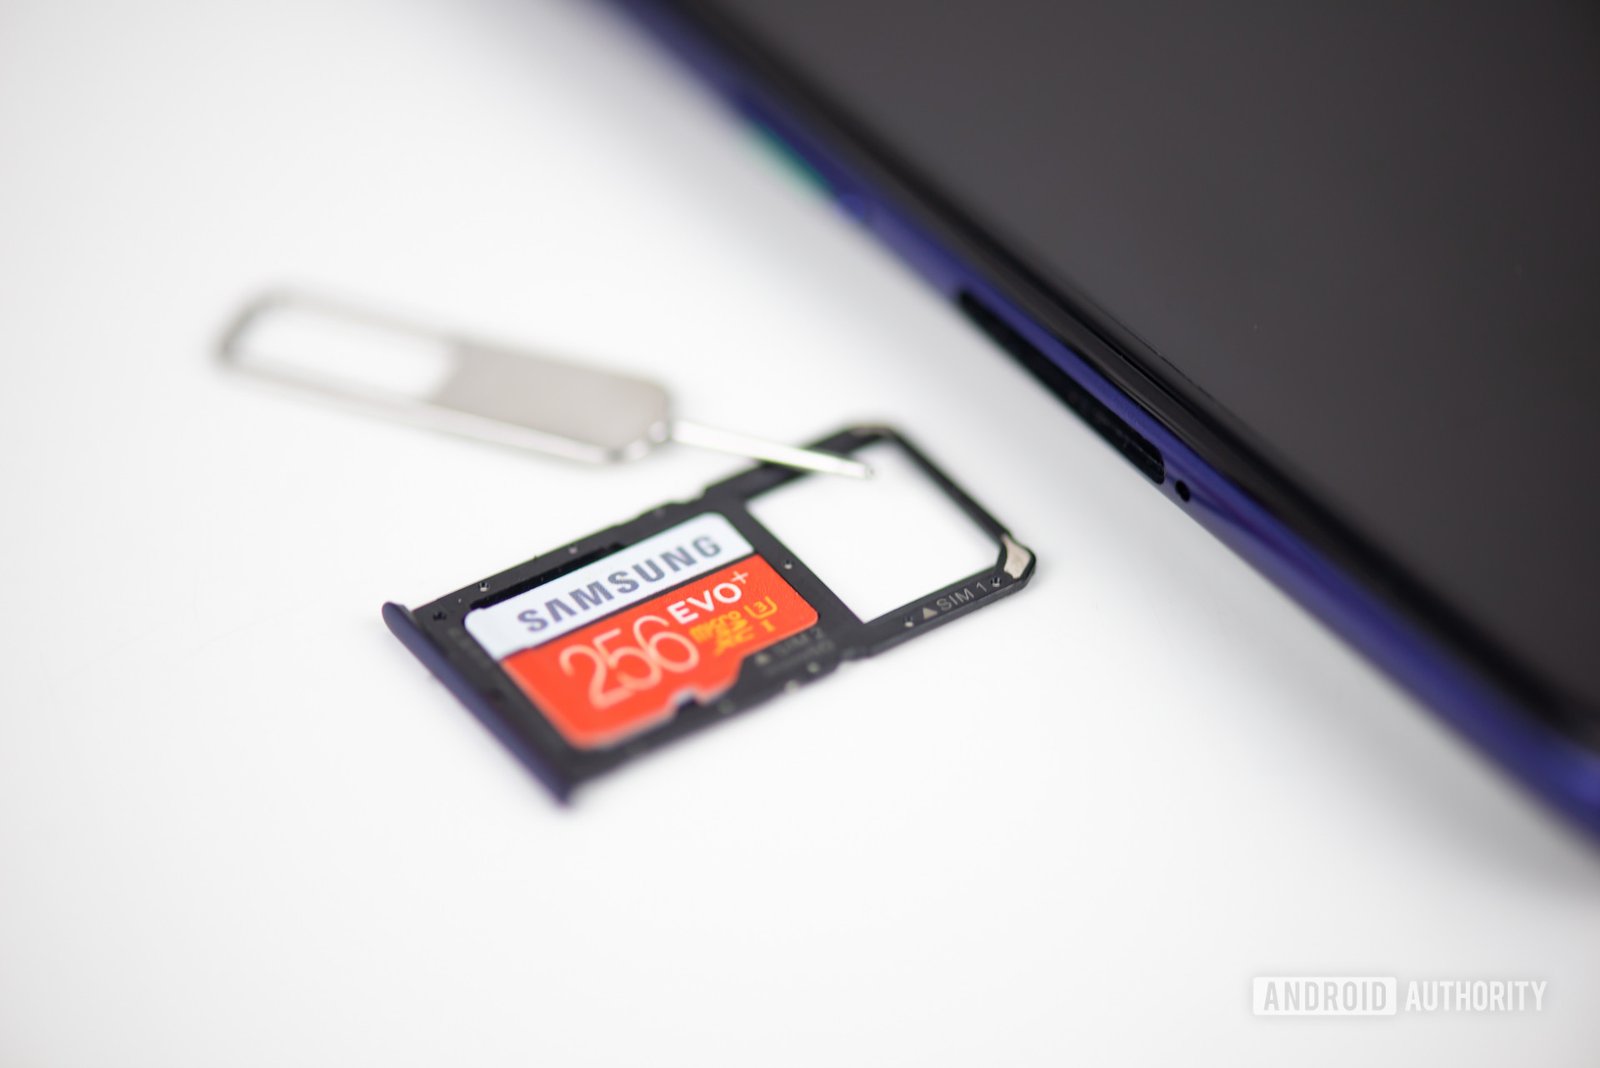 MicroSD card tray with a microSD card